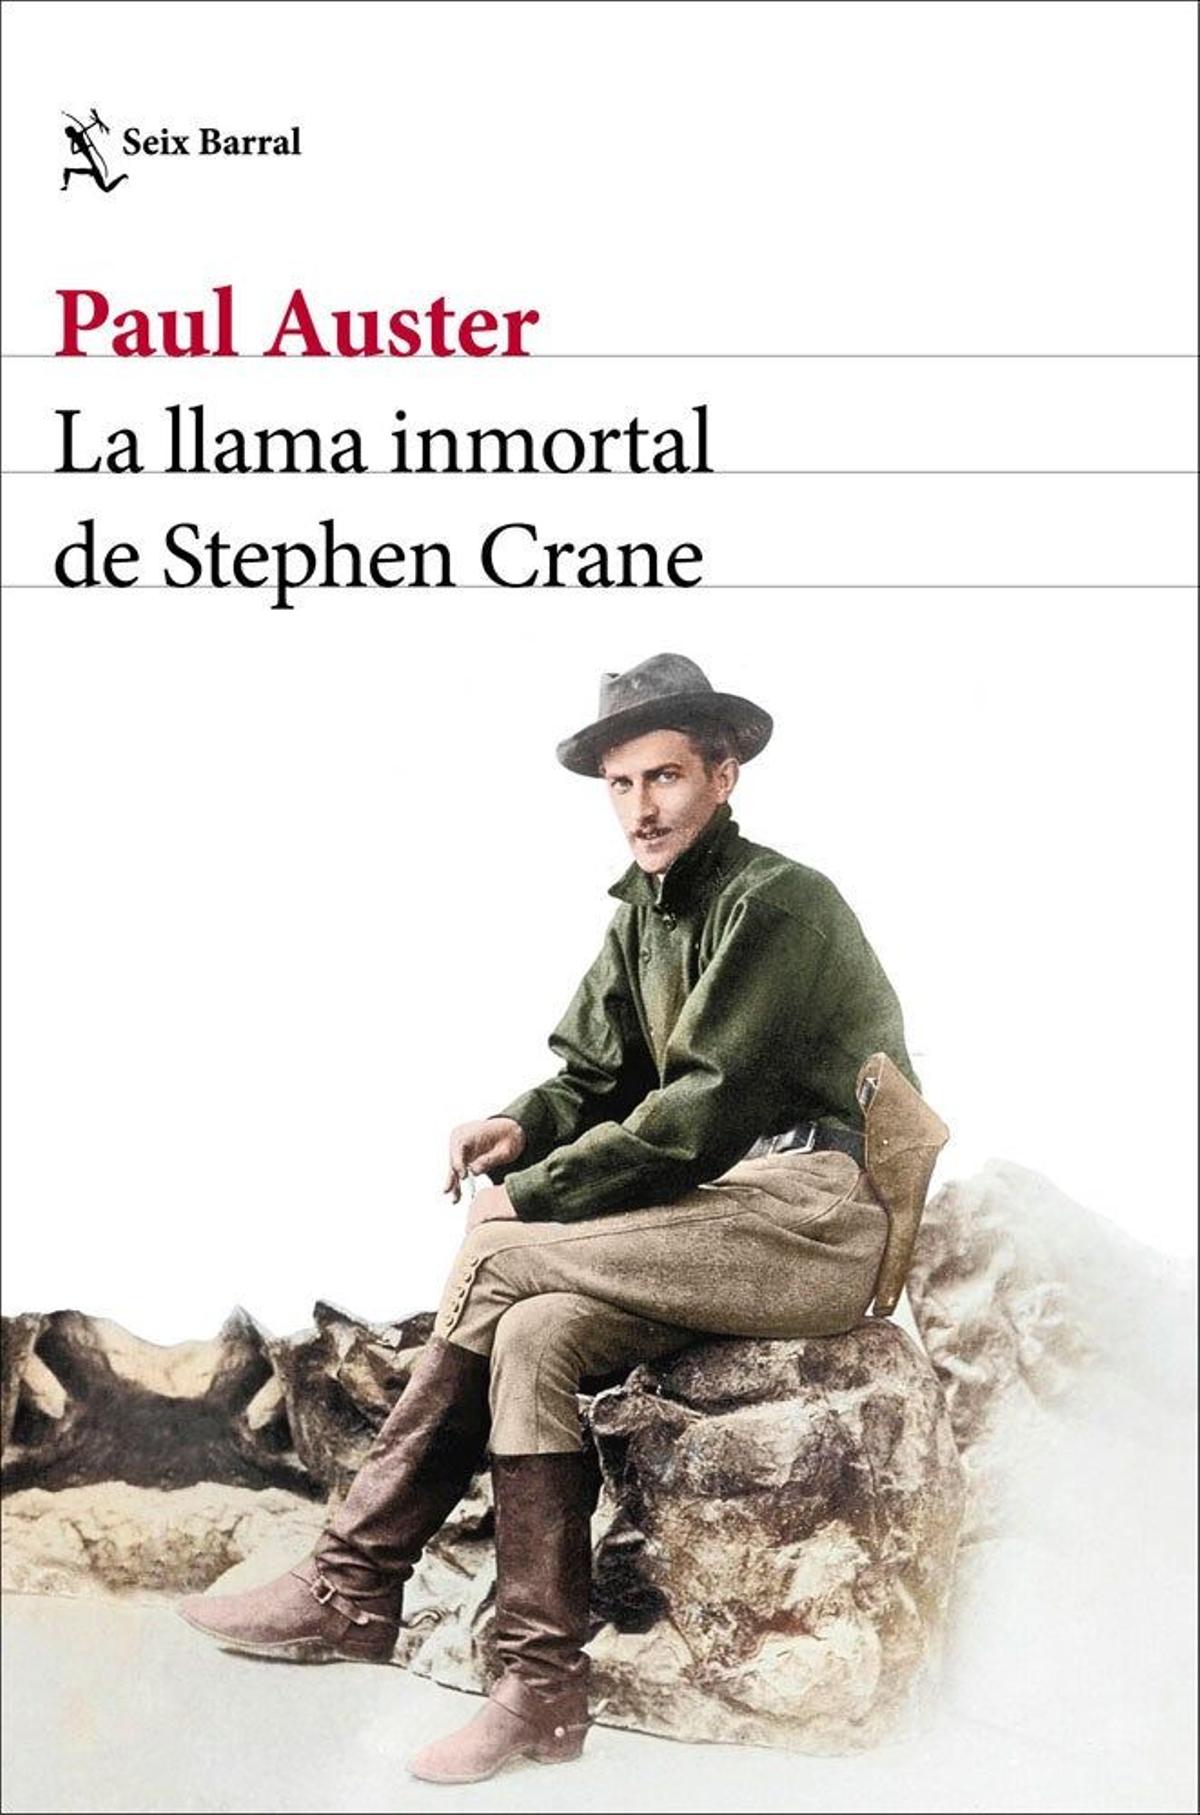 Portada del libro 'La llama inmortal de Stephen Crane', de Paul Auster